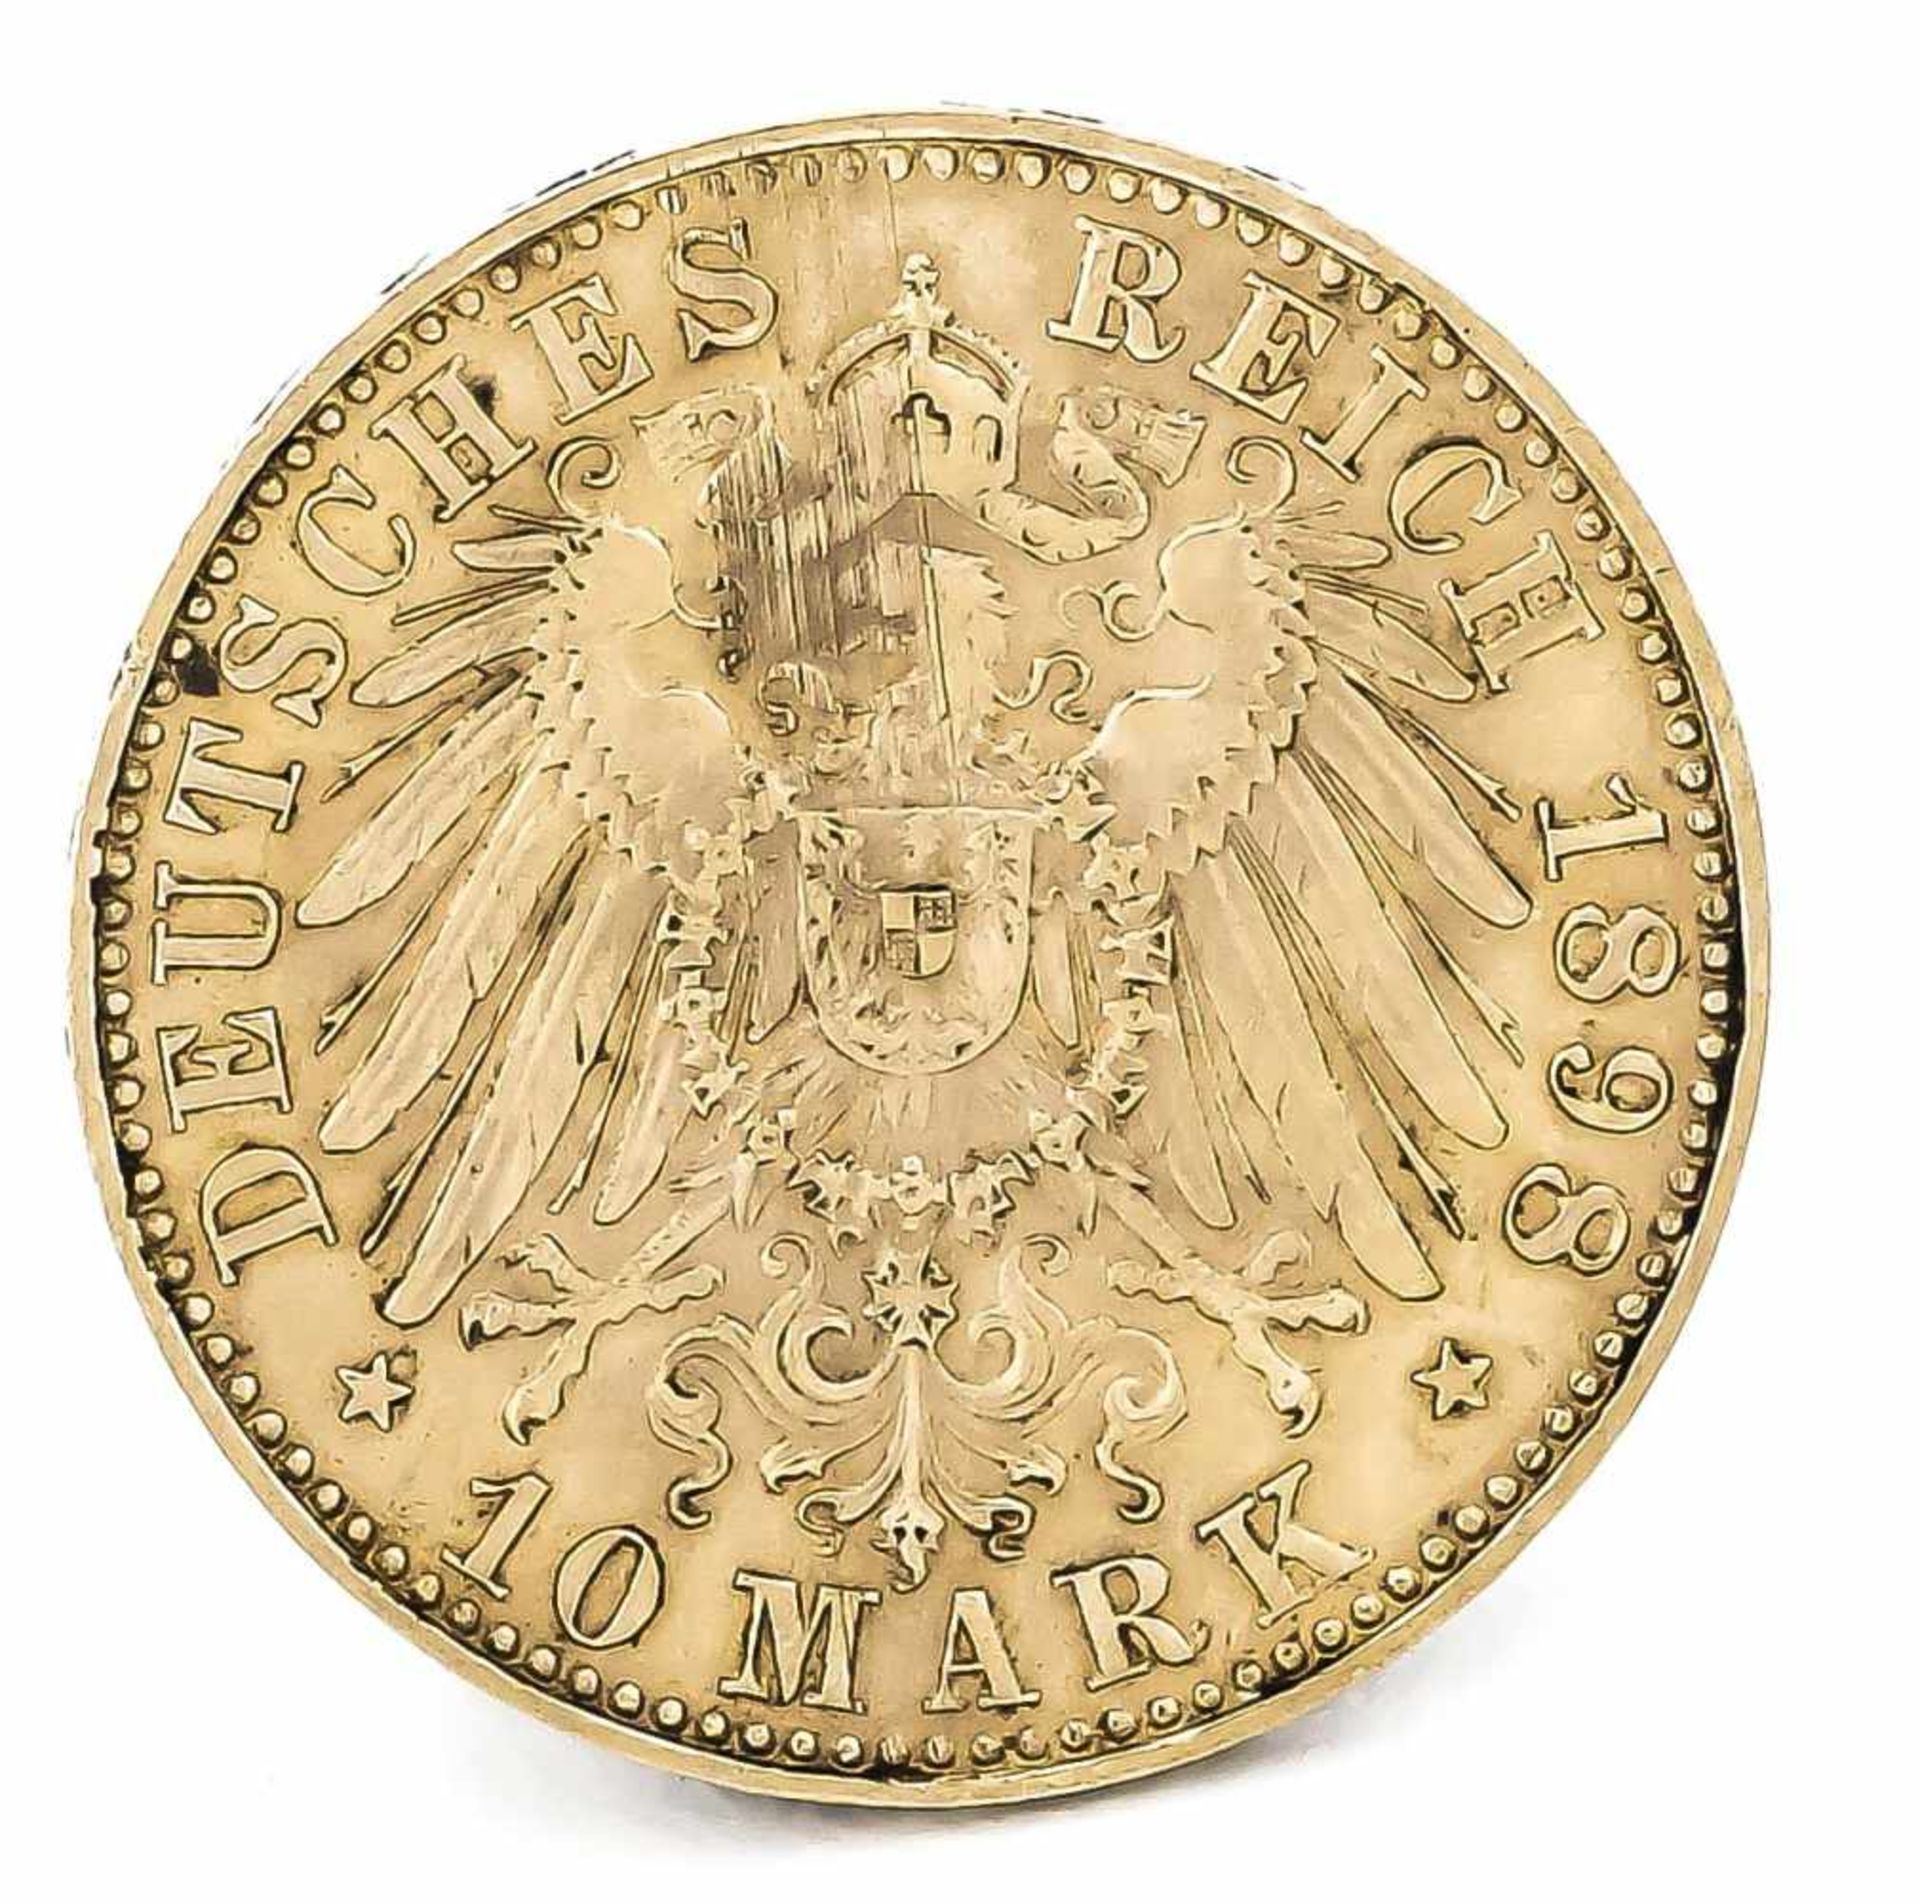 10 Mark, Sachsen, Albert König von Sachsen, 1898 E, in ss-vz - Bild 2 aus 2